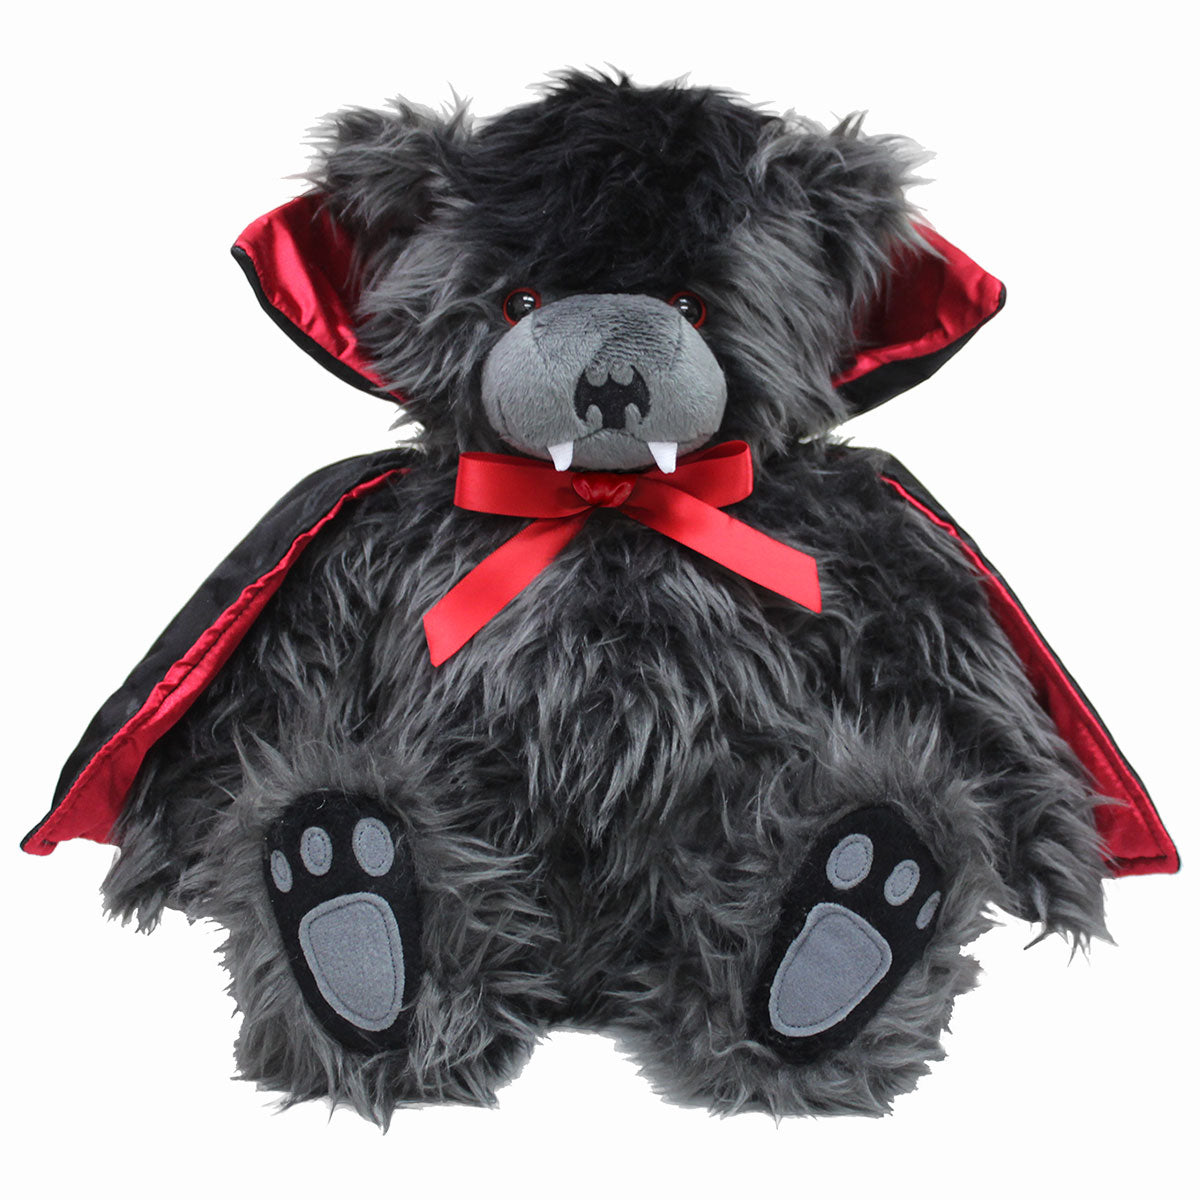 TED THE IMPALER - TEDDY BEAR - Jouet en peluche doux à collectionner 12 pouces